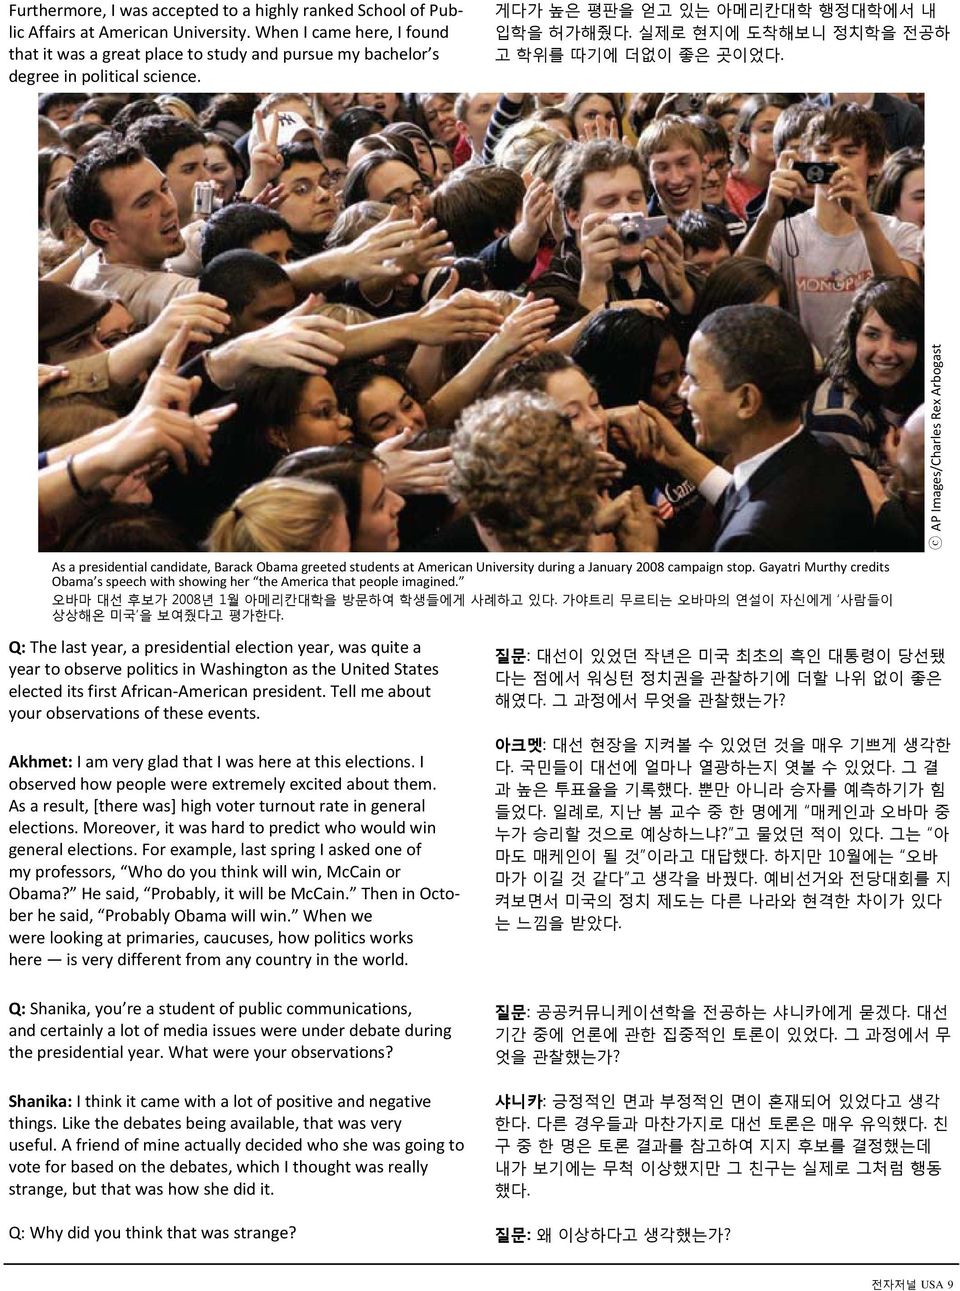 실제로 현지에 도착해보니 정치학을 전공하 고 학위를 따기에 더없이 좋은 곳이었다. As a presidential candidate, Barack Obama greeted students at American University during a January 2008 campaign stop.